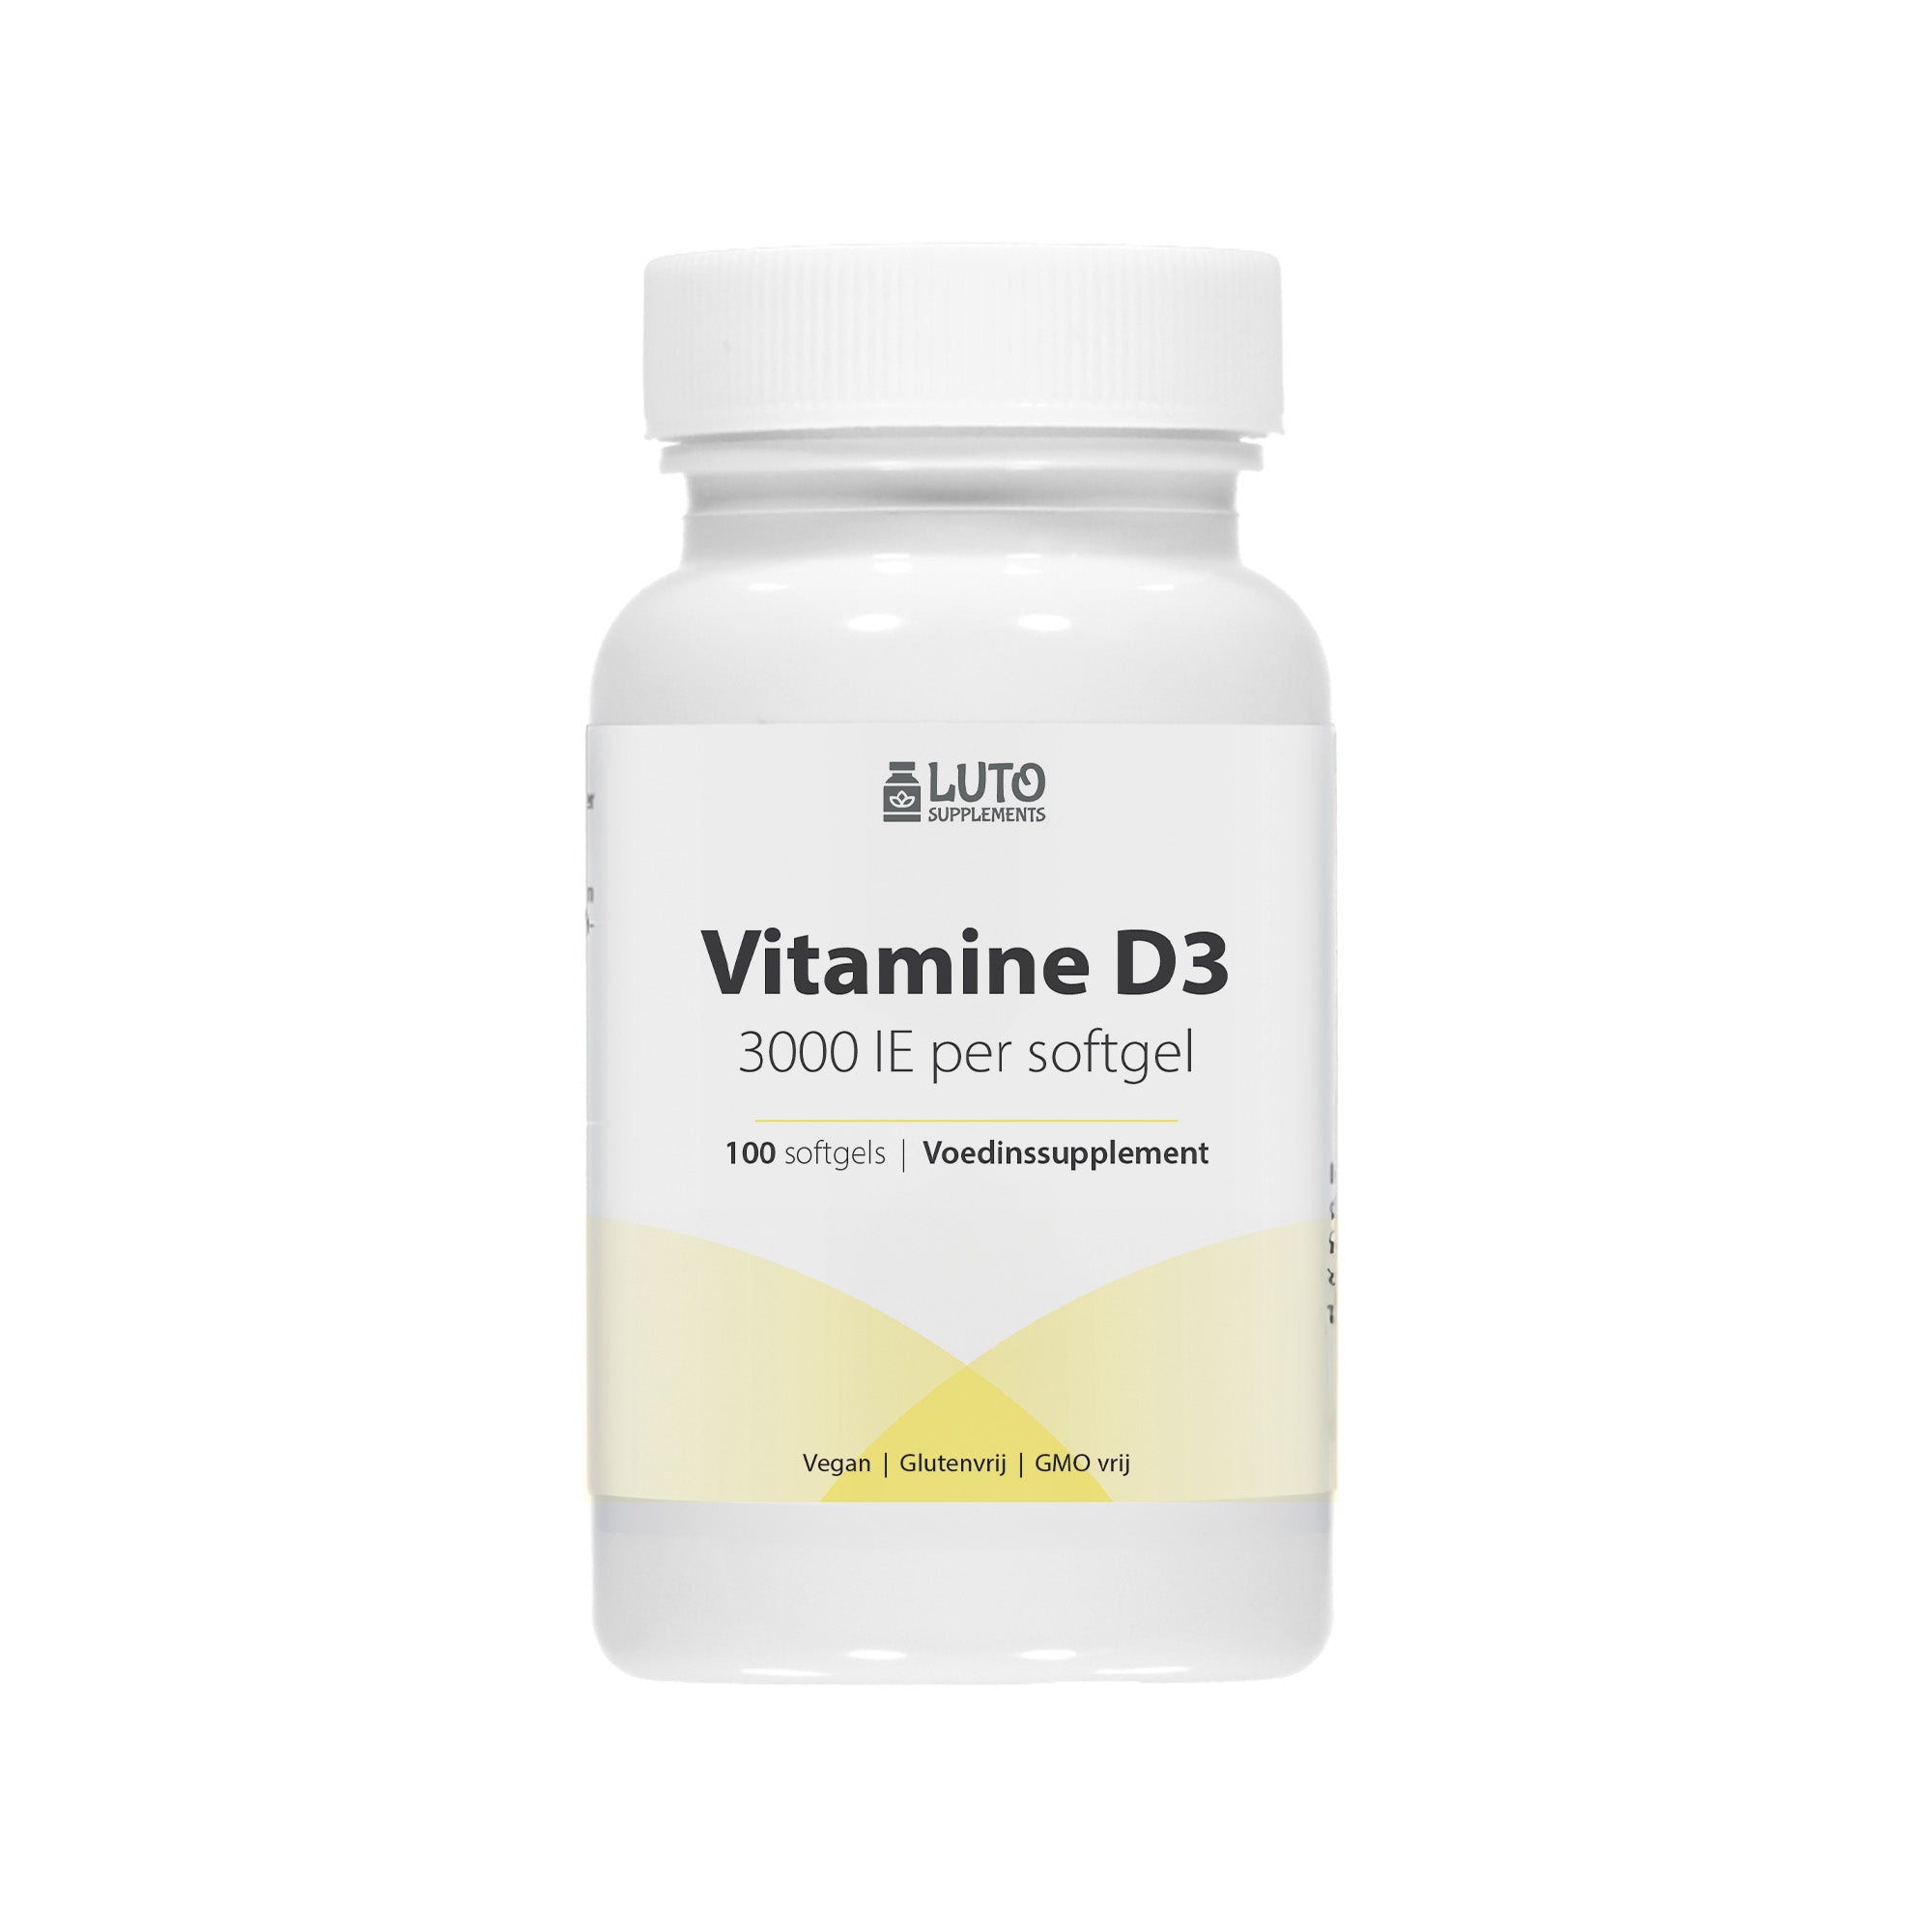 Vitamine D3 - 3000IU / 75 mcg - 100 Softgels - Ondersteunt het immuunsysteem - Luto Supplements